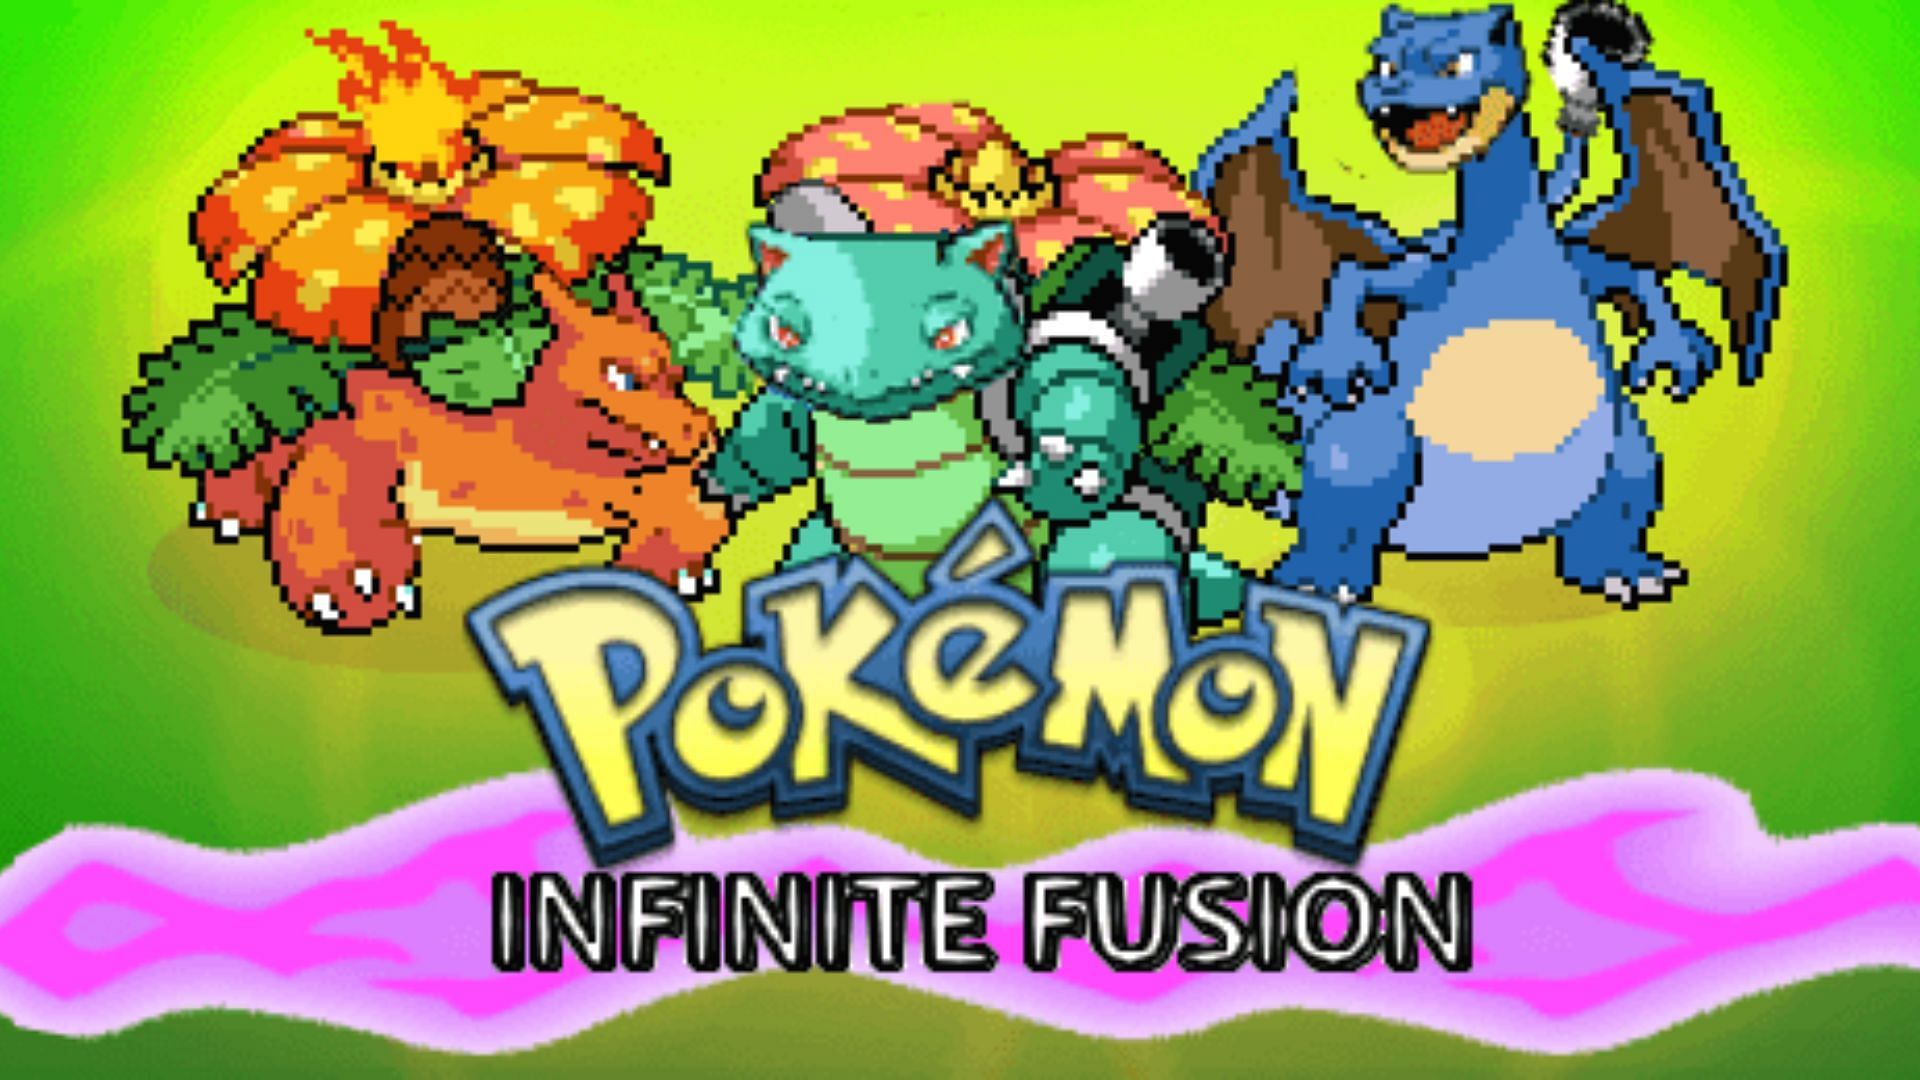 Schermata del titolo di Infinite Fusion (immagine tramite Schrroms)